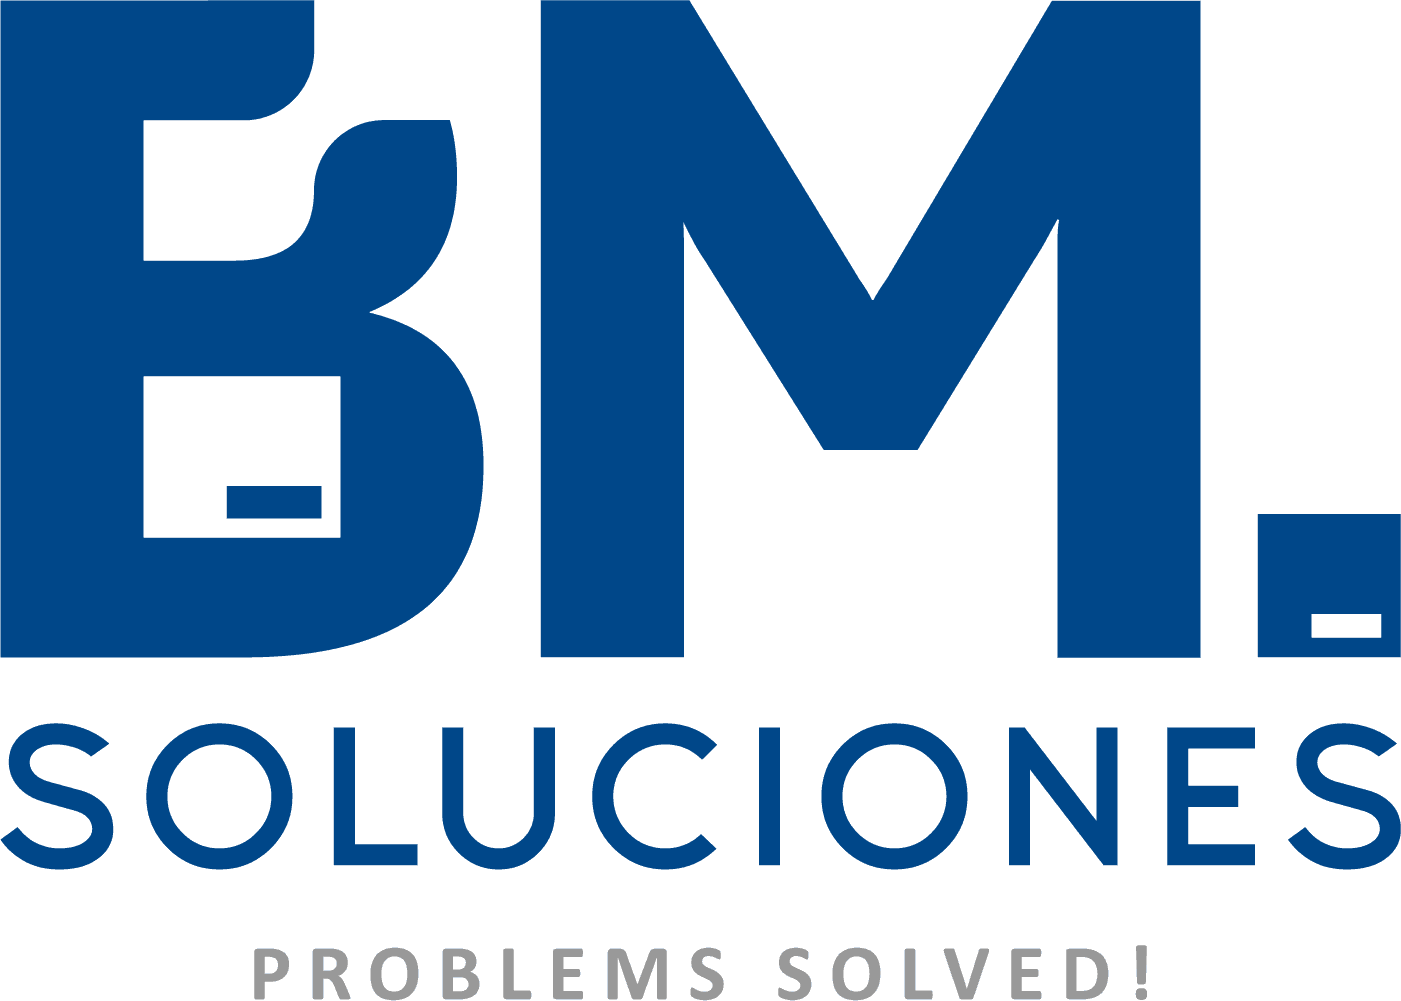 BM Soluciones icon